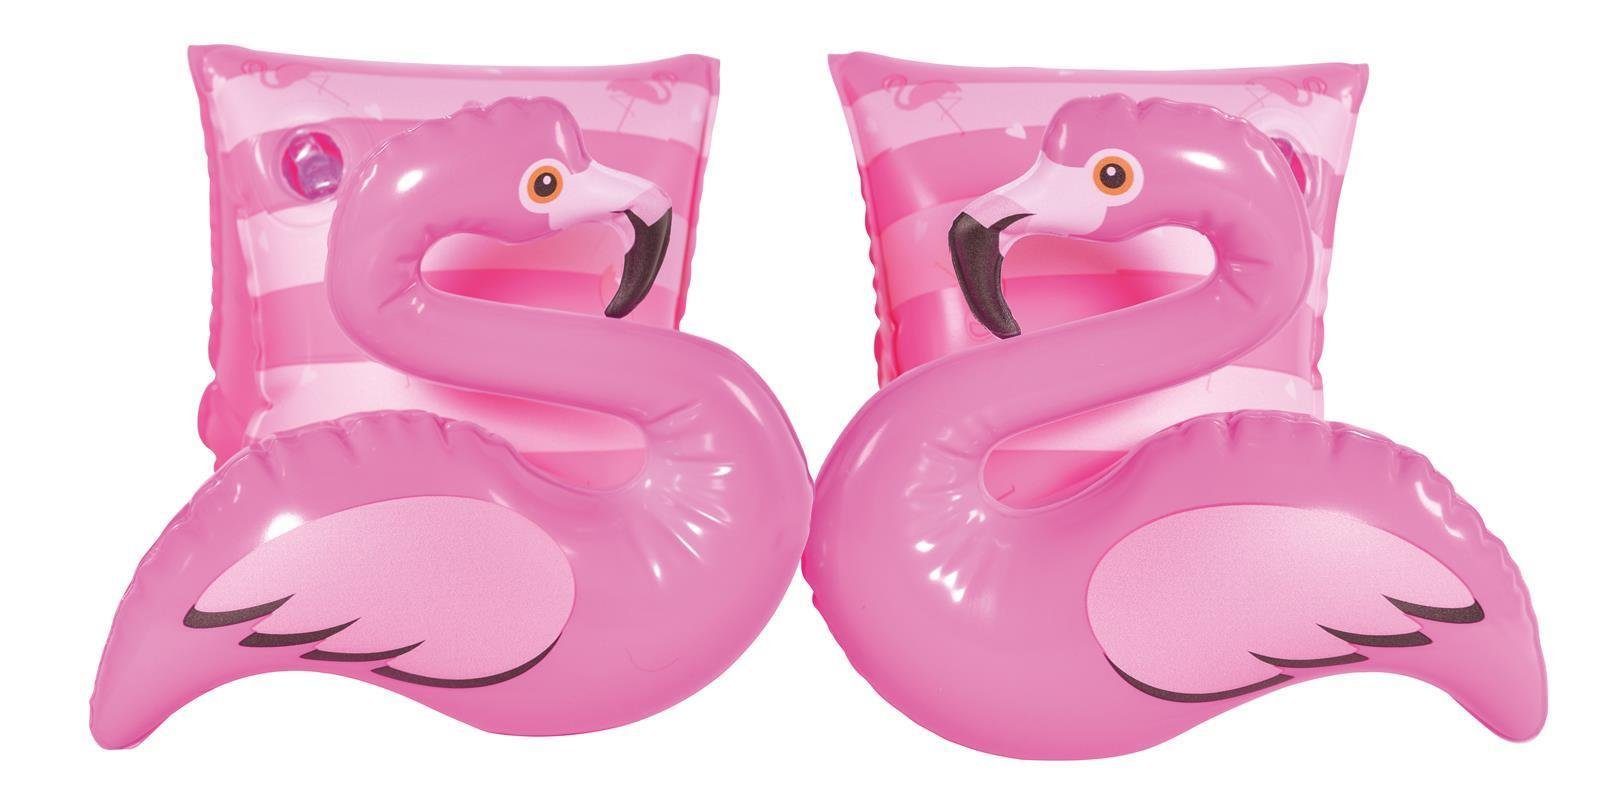 SunClub Schwimmflügel Schwimmhilfe Kinder cm 23x15 2-fach Schwimmärmel (Einzelpack), für Tierwelt sortiert